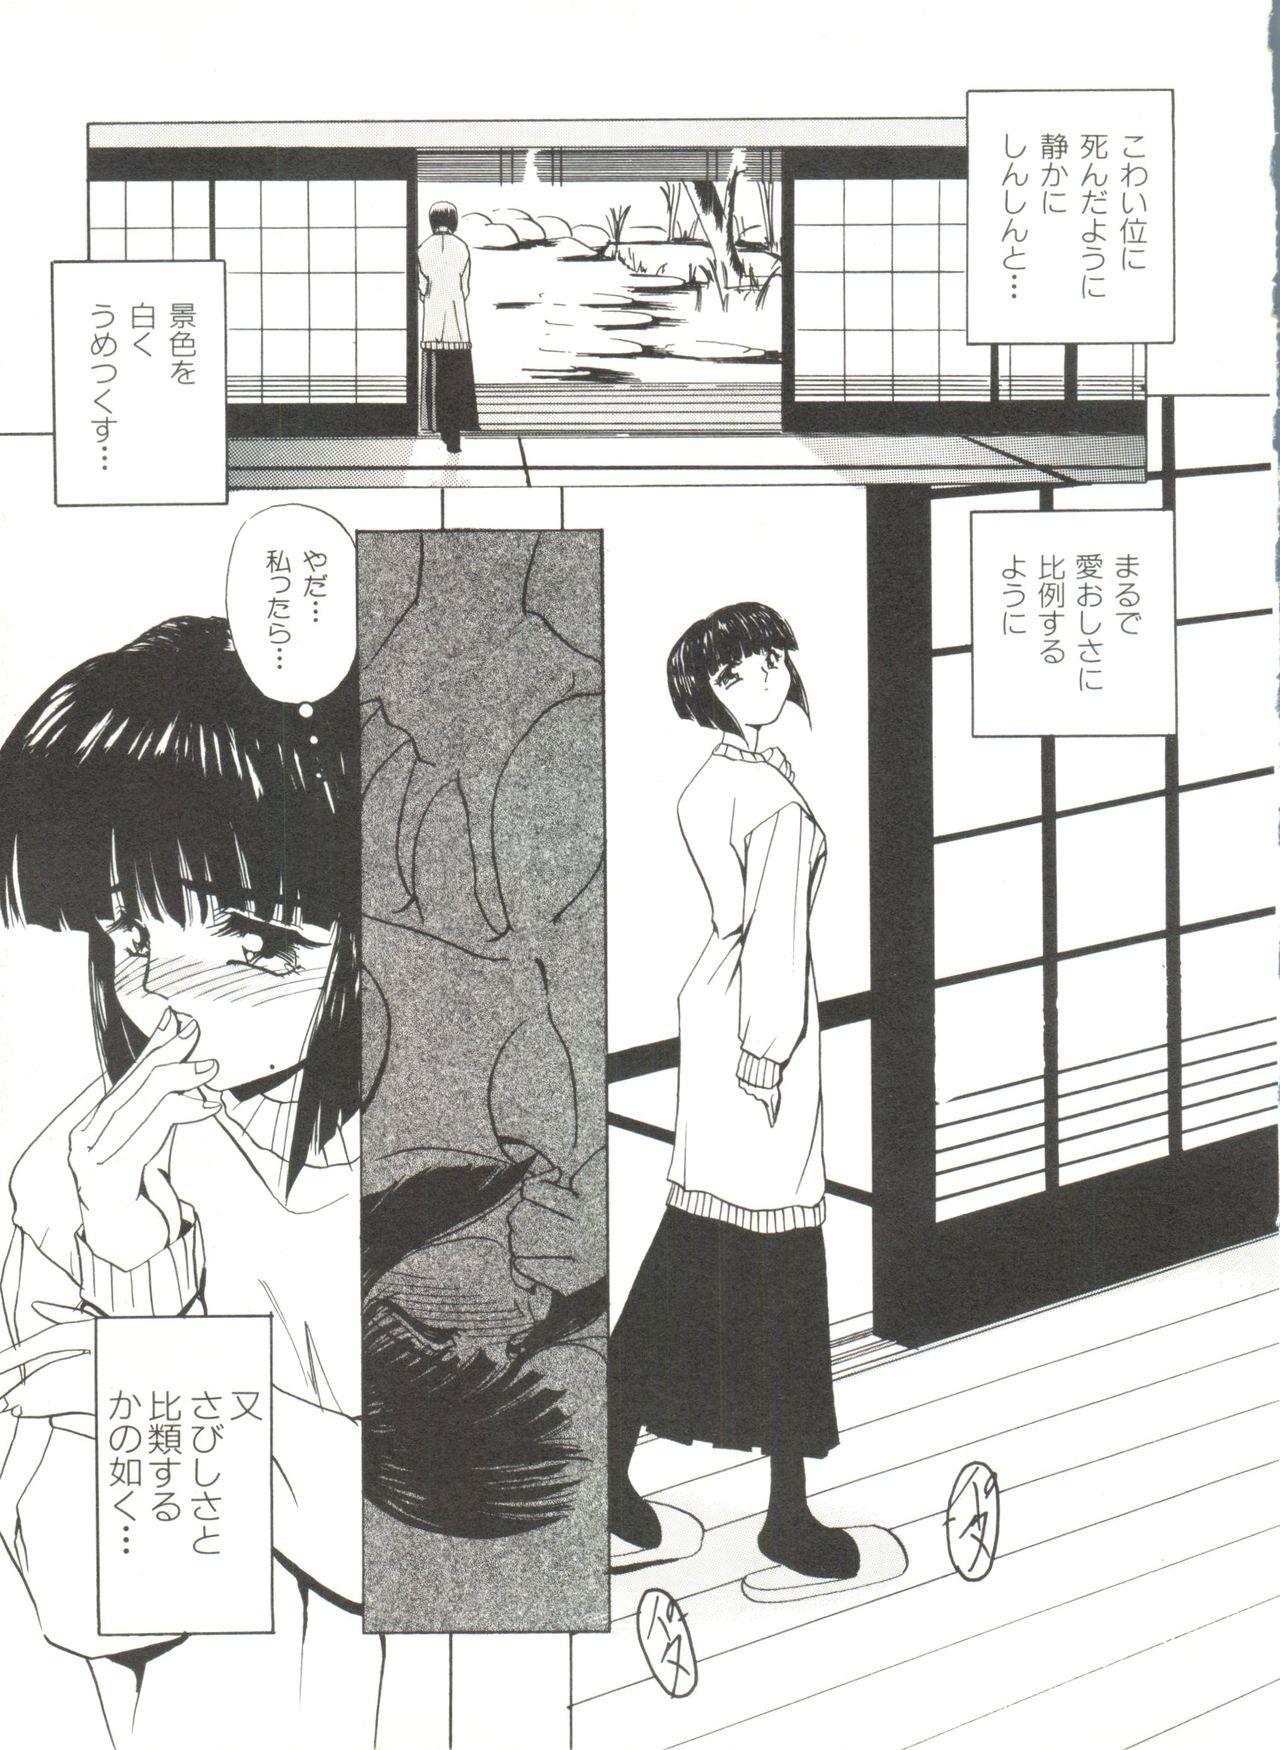 Bishoujo Doujinshi Anthology 4 8